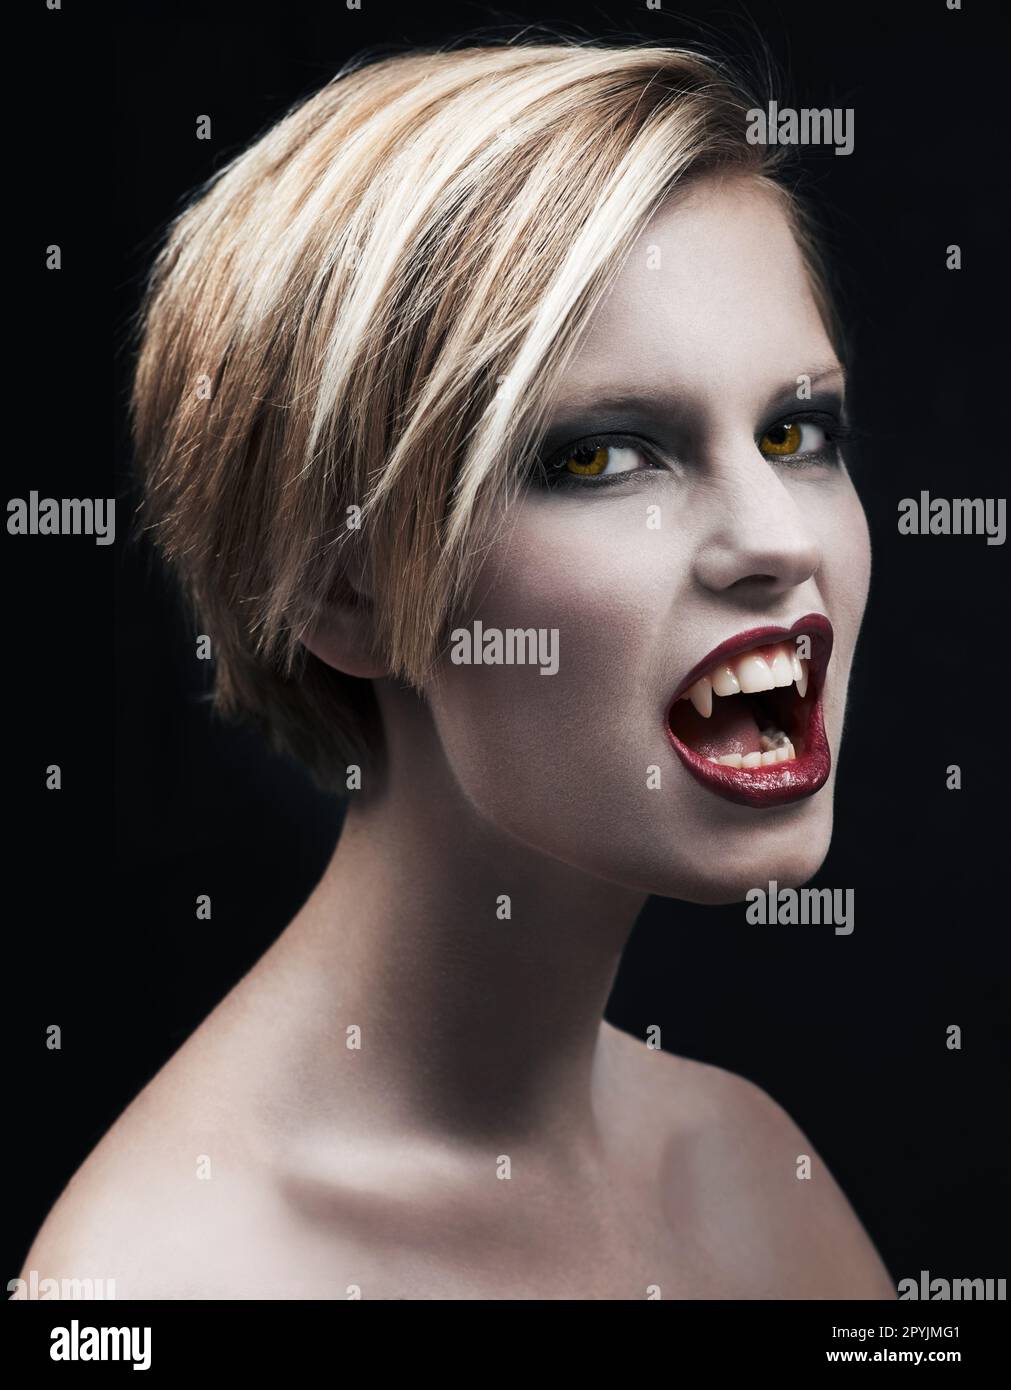 Colmillos de vampiro  Ideas de maquillaje de halloween, Colmillos de  vampiro, Maquillaje de vampiro